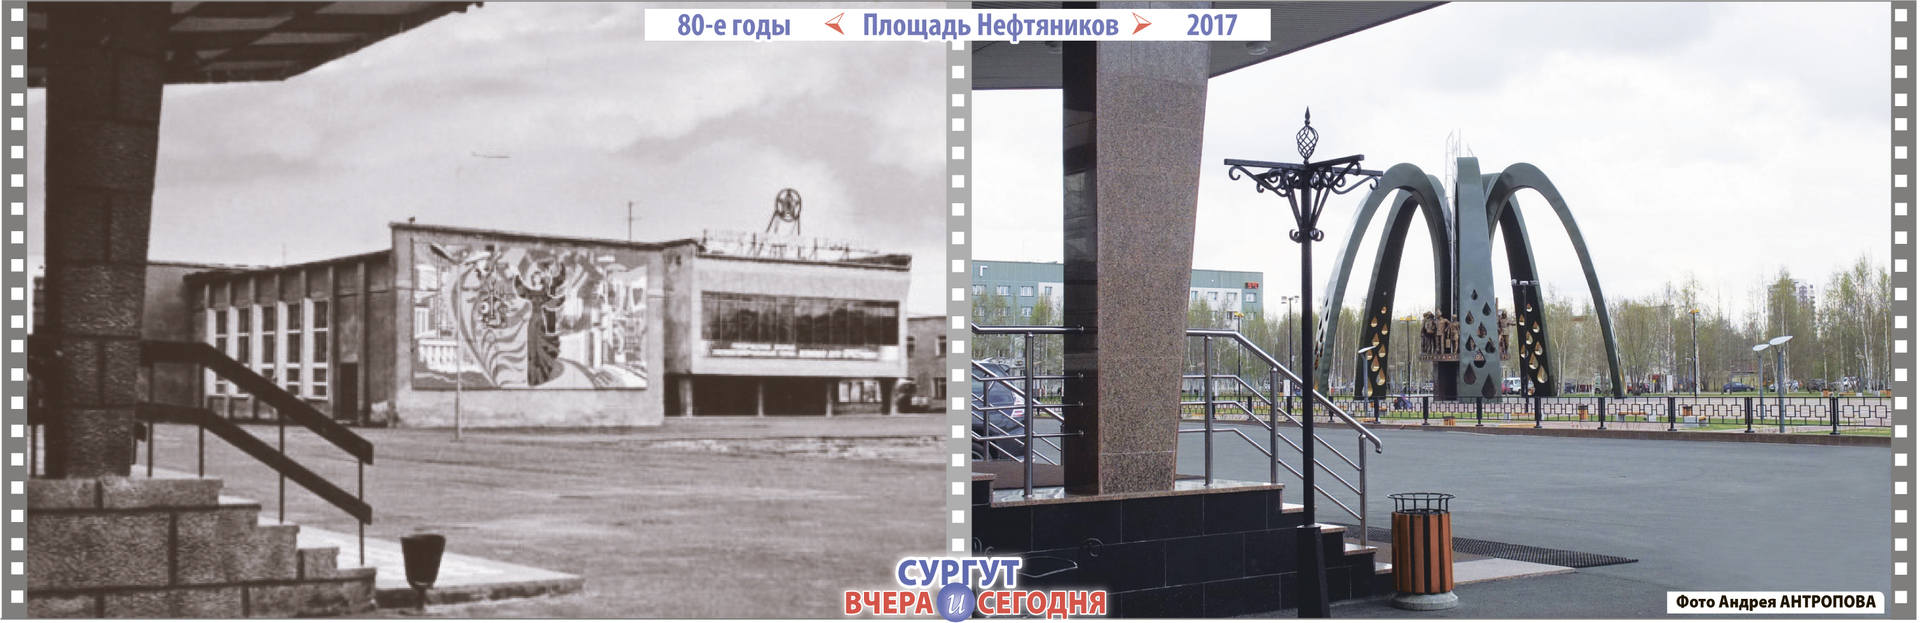 Город Сургут 80 годы